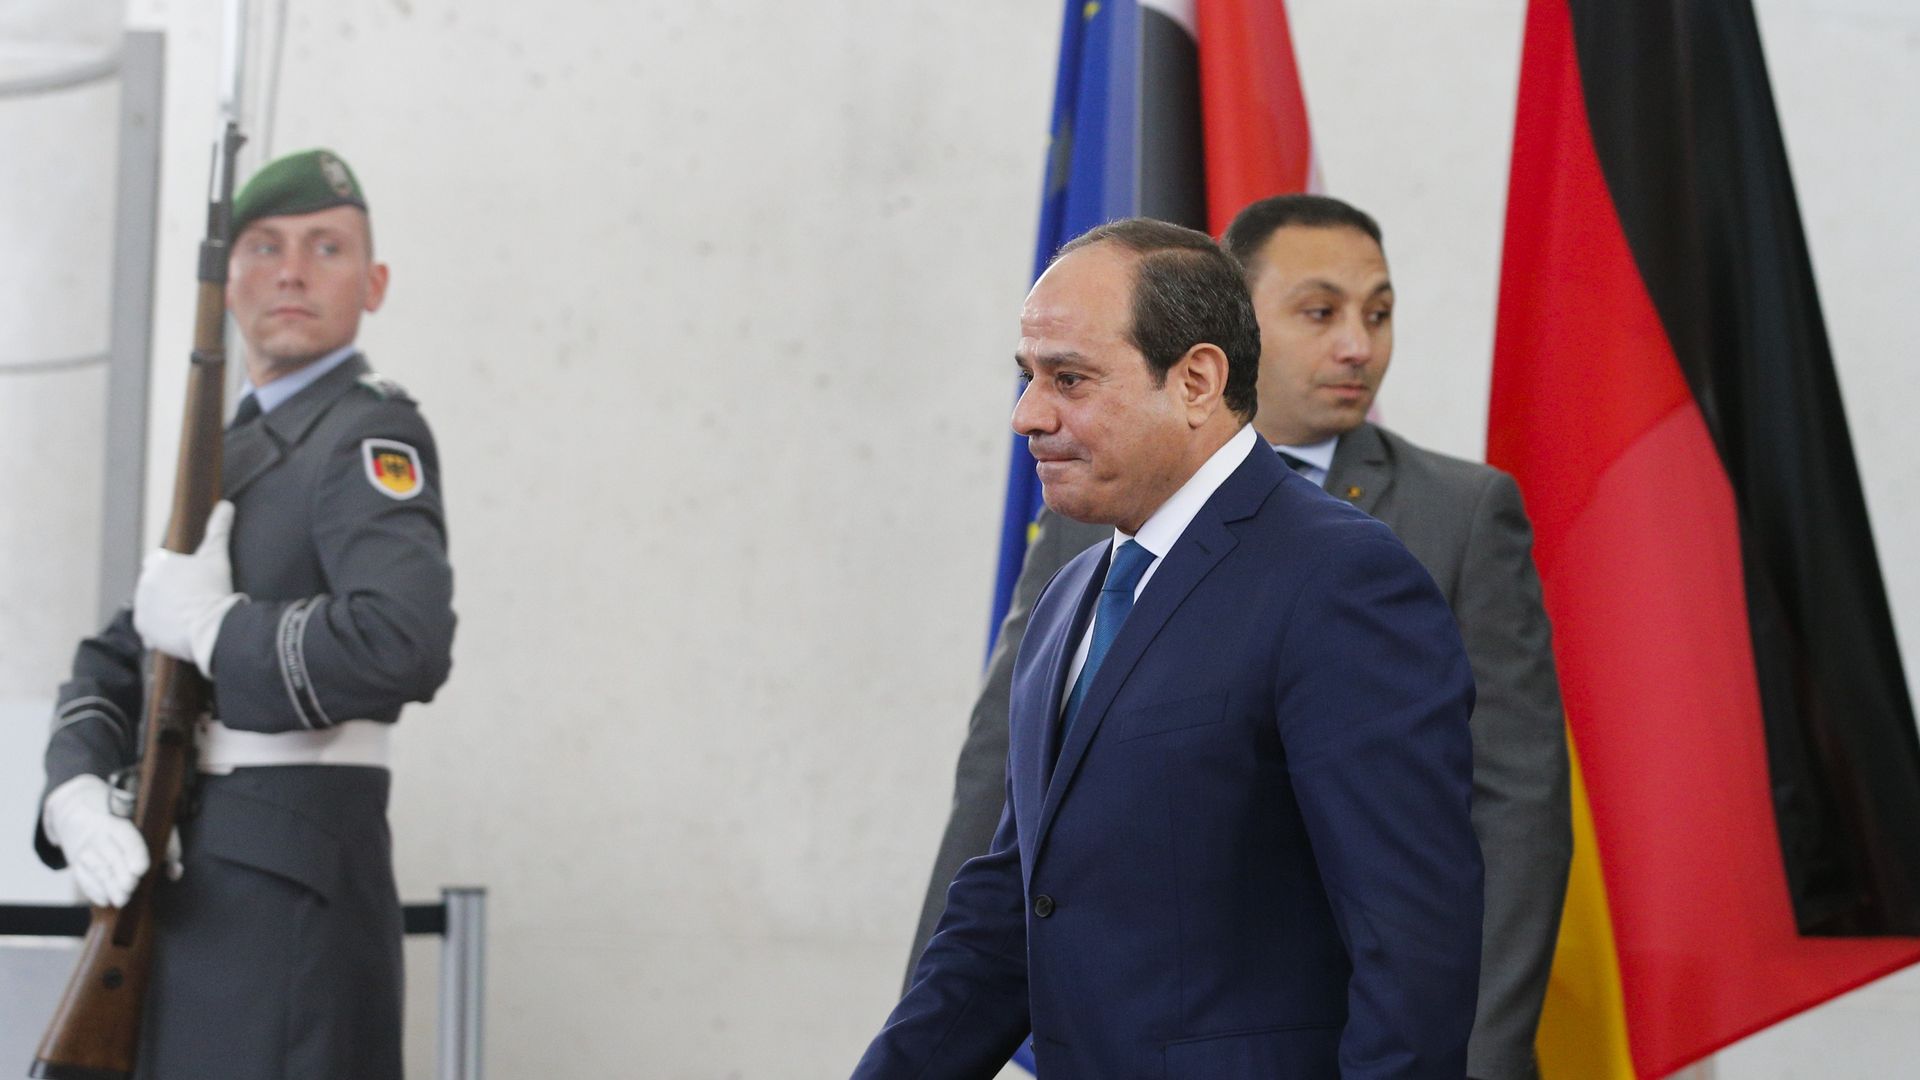 President of Egypt Abdel Fattah el-Sisi